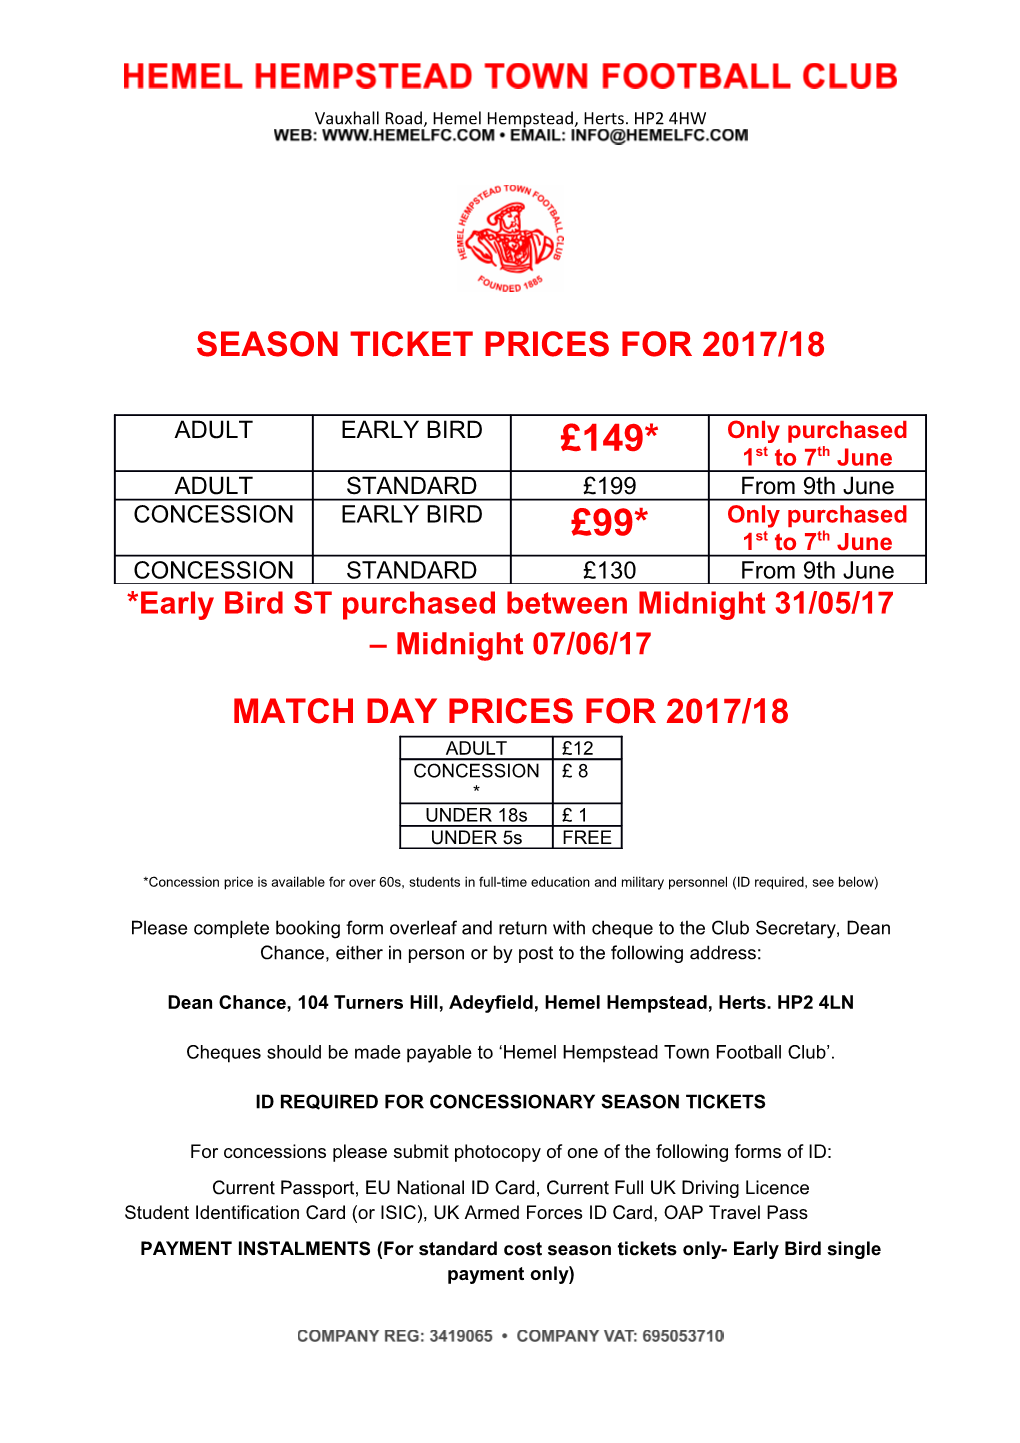 Season Ticket Prices for 2017/18